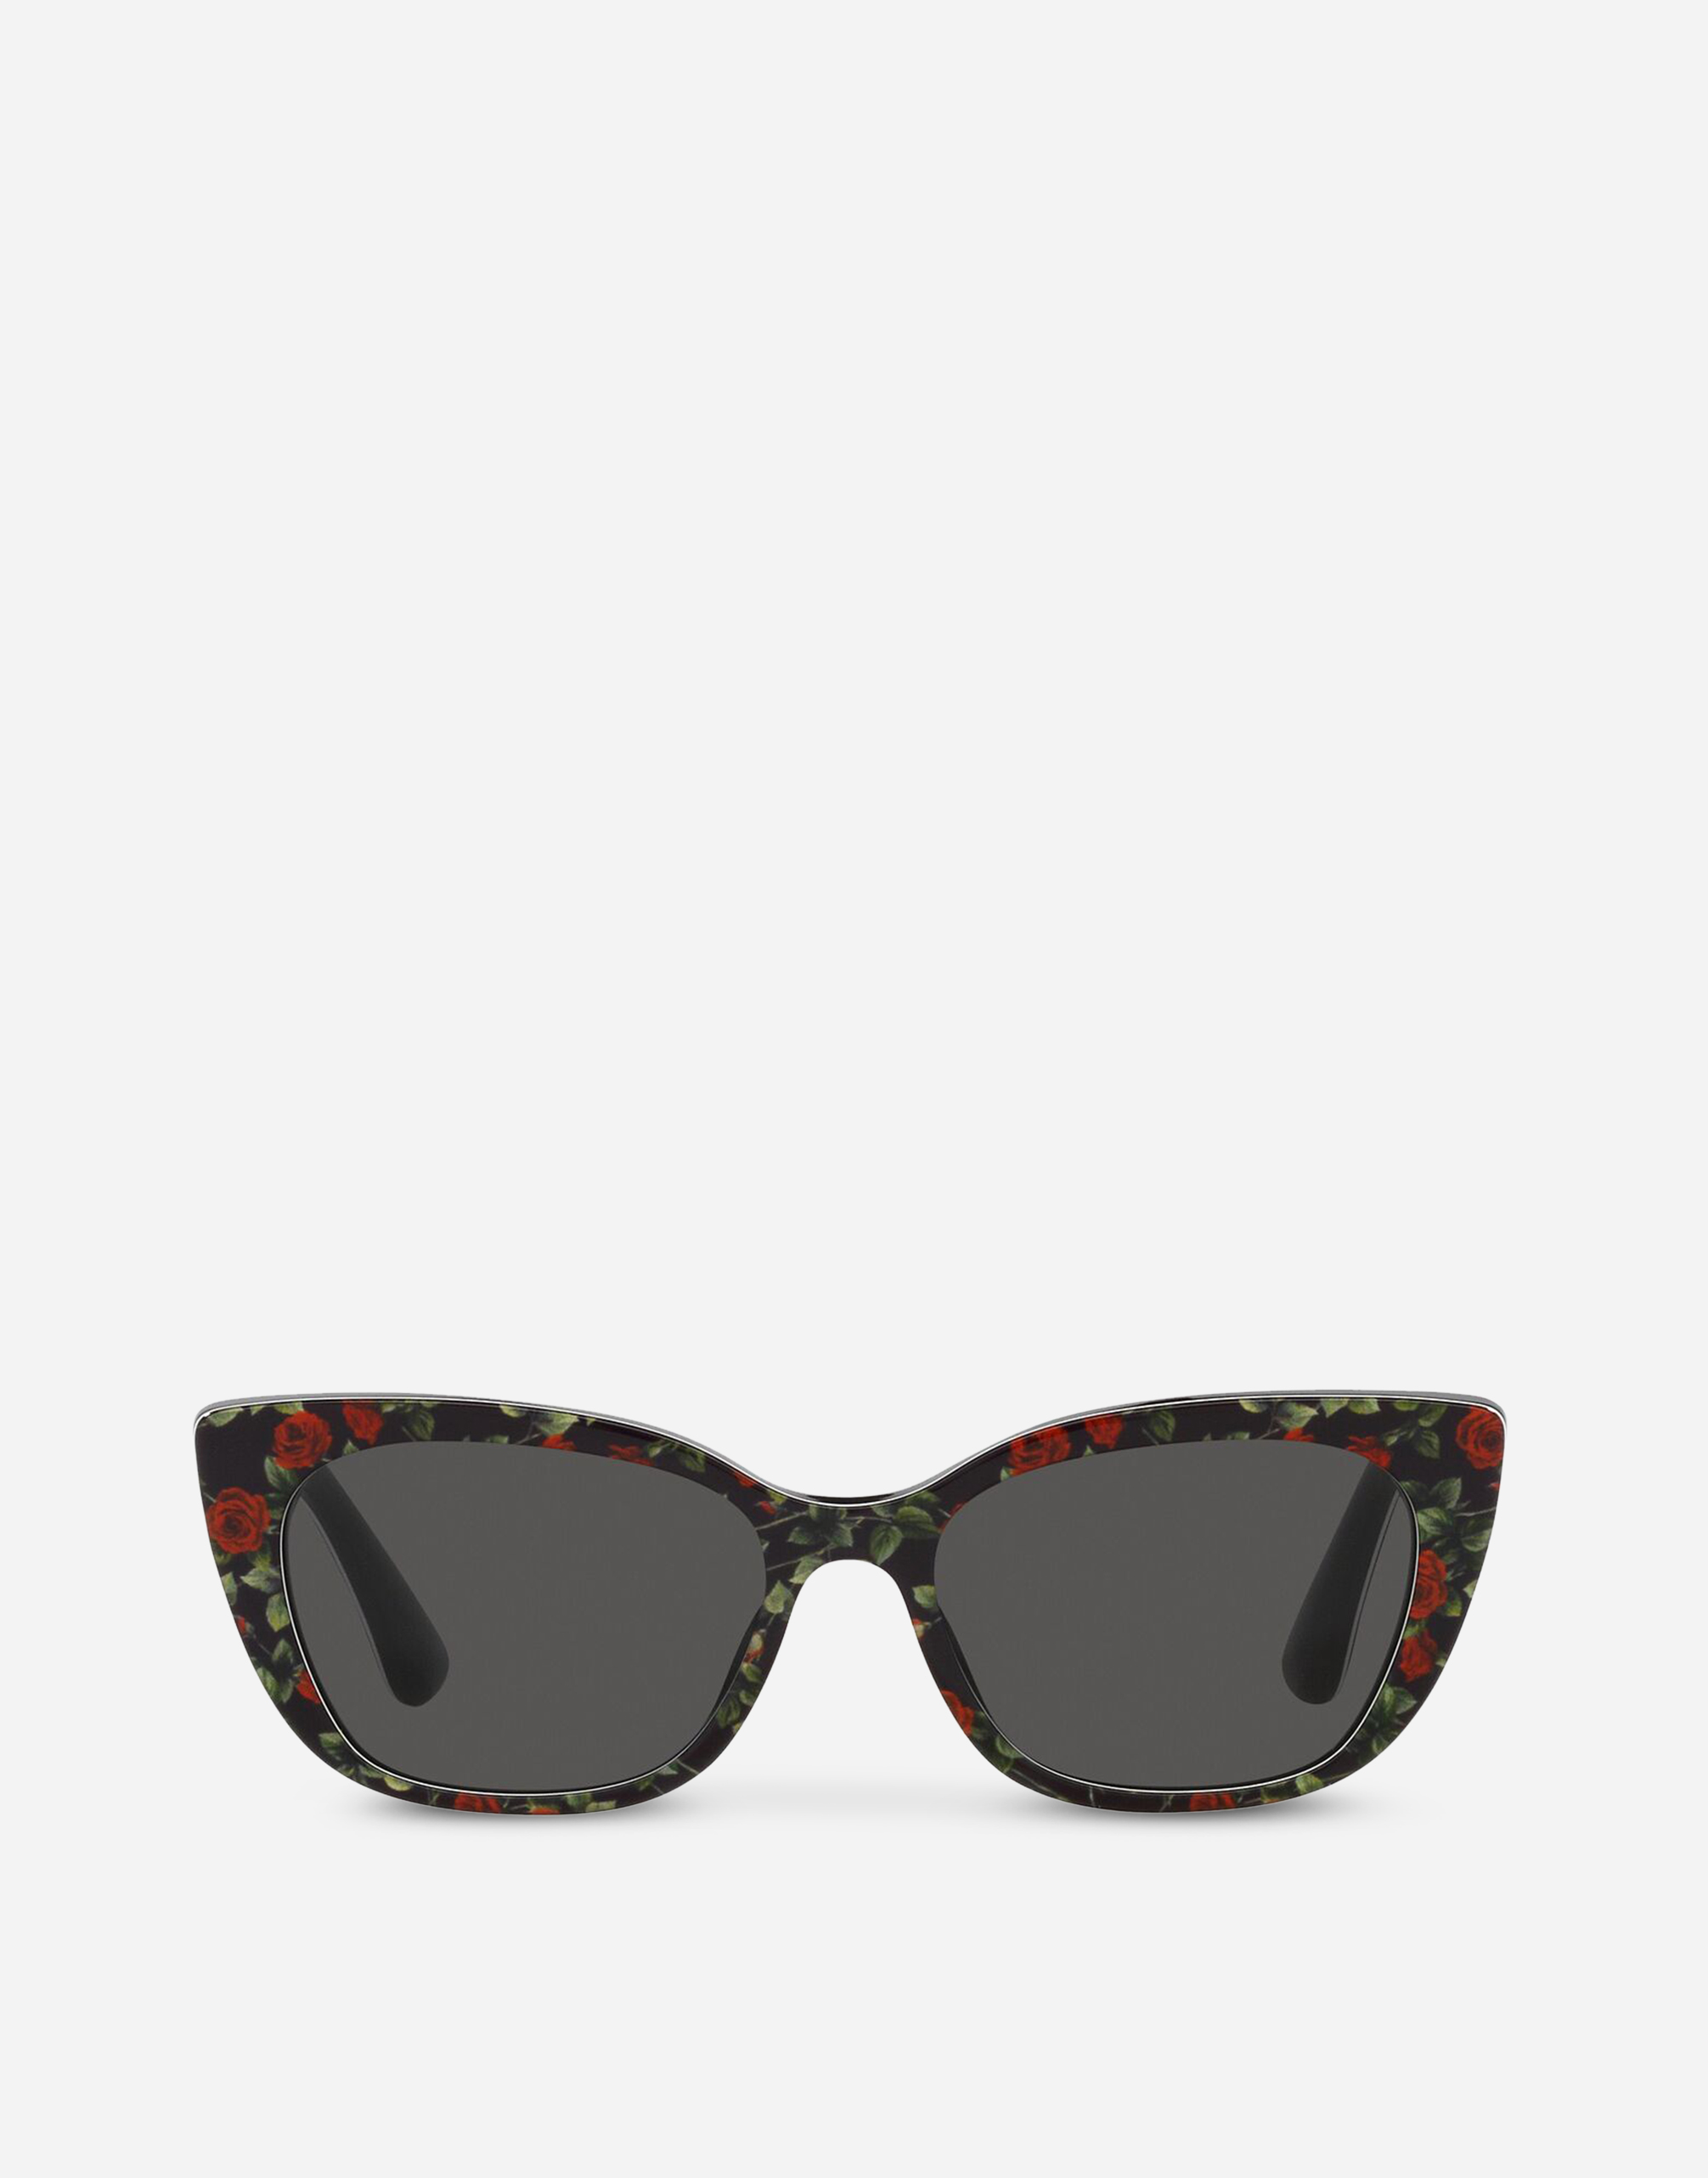 Dolce & Gabbana Kids' Mini Me Sunglasses In Multicolor